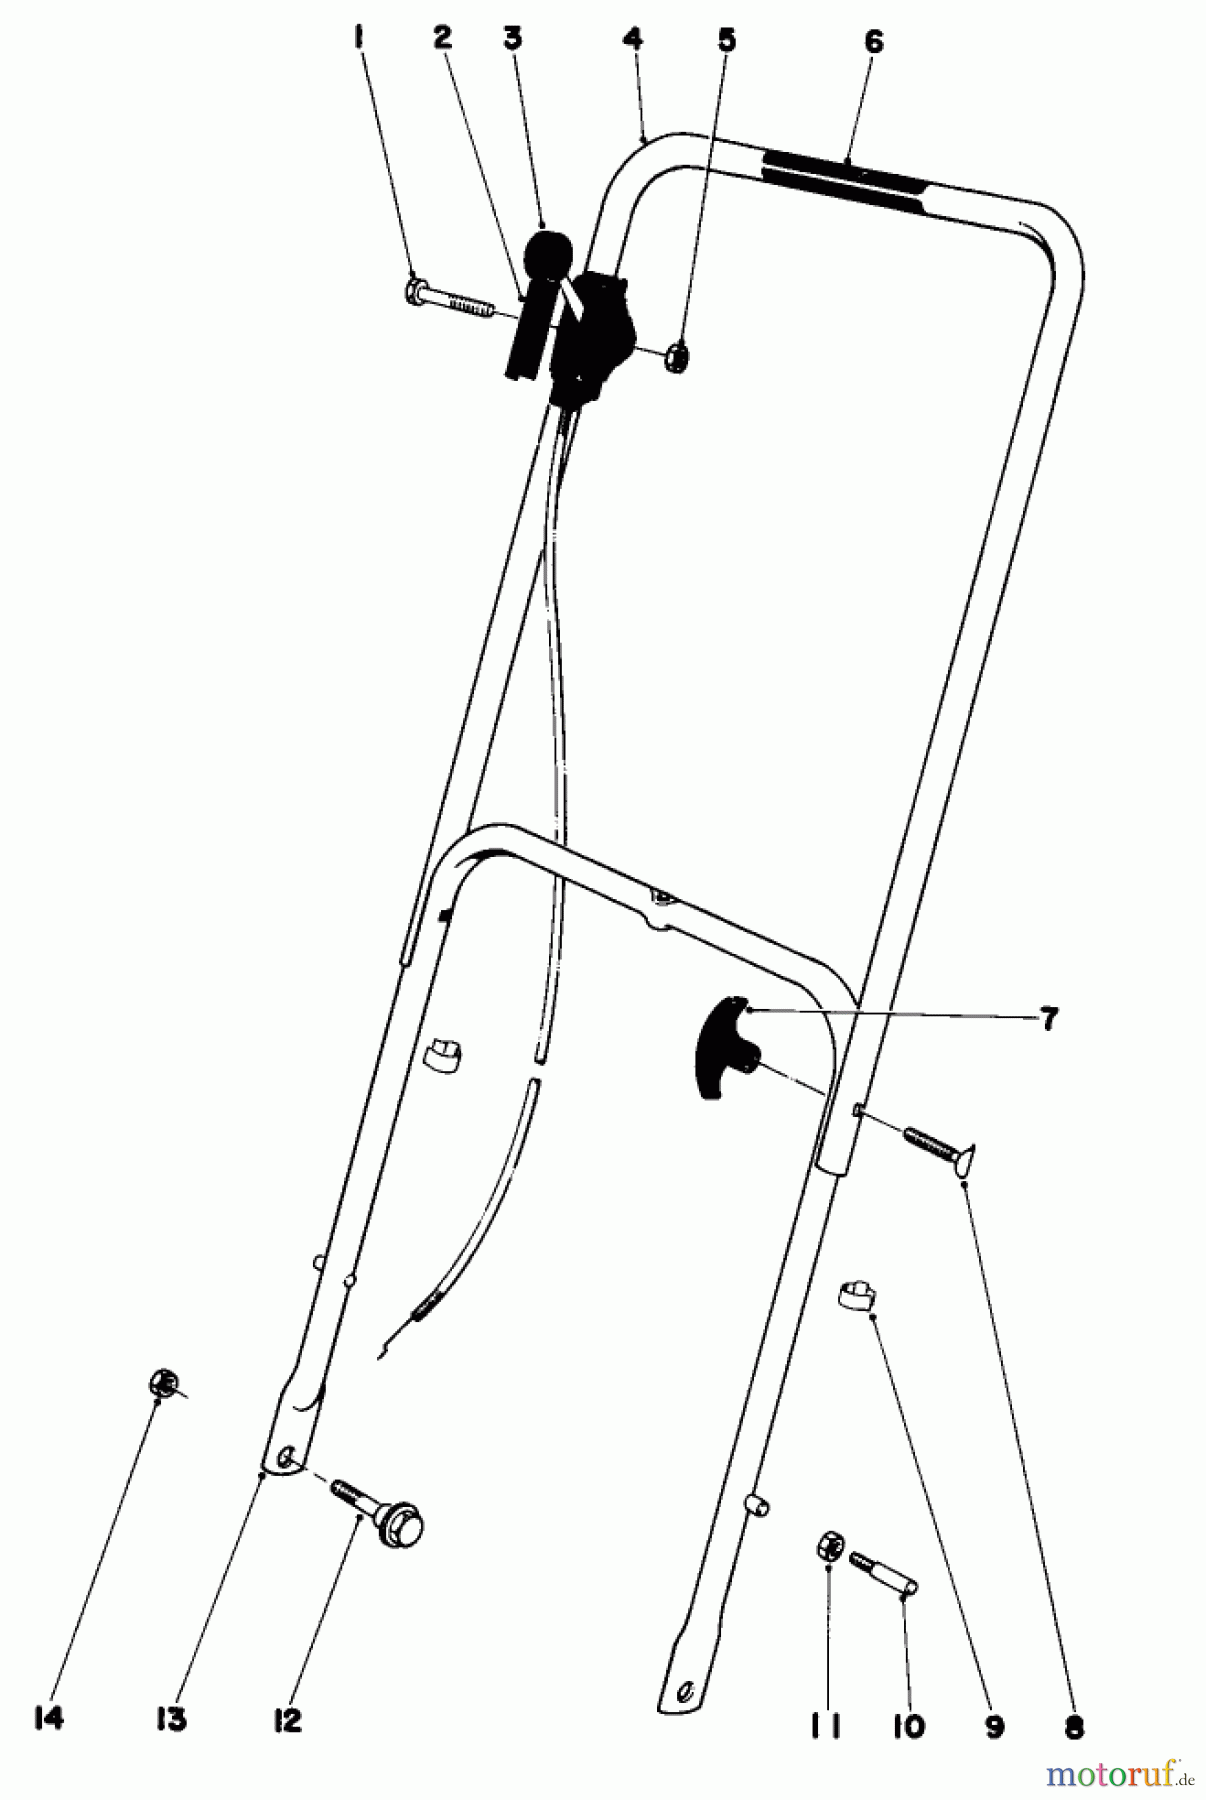  Toro Neu Mowers, Walk-Behind Seite 1 16113 - Toro Whirlwind II Lawnmower, 1979 (9000001-9999999) HANDLE ASSEMBLY MODEL 16009 AND 16113